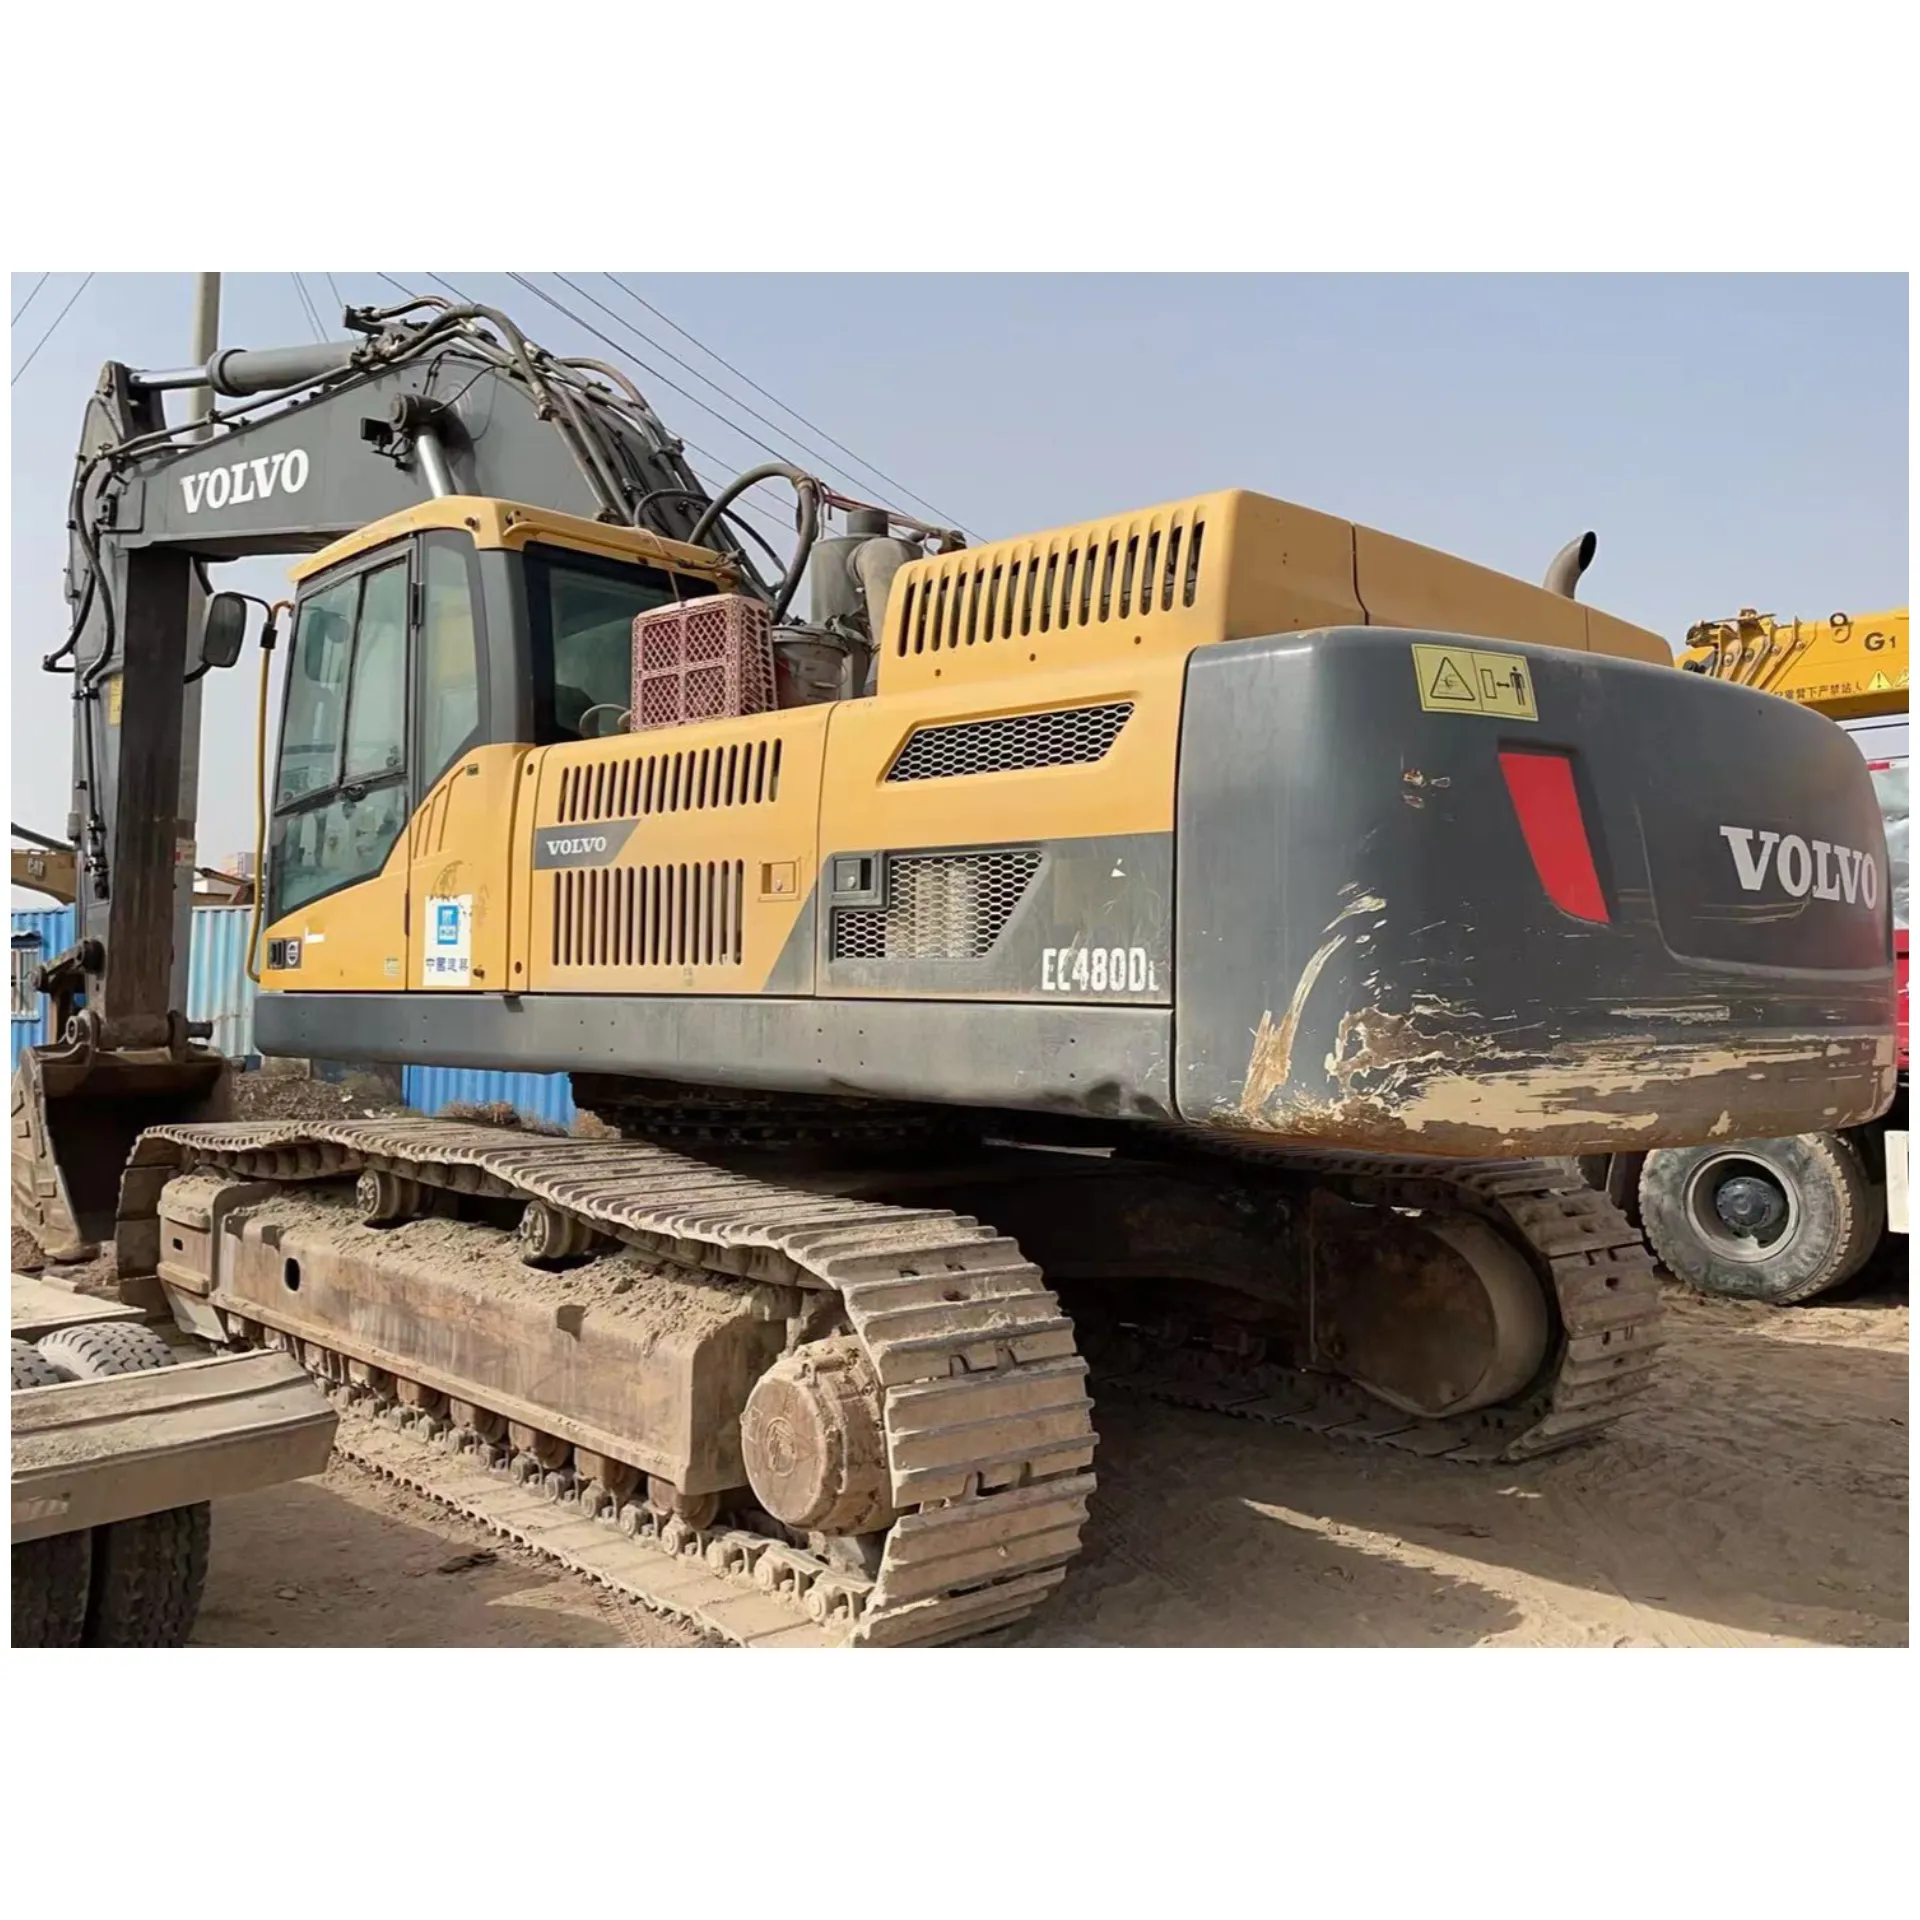 PENGJING 48-Tonnen-Bohrbagger VOLVO EC480 mit kürzerer Betriebszeit werden weltweit verkauft